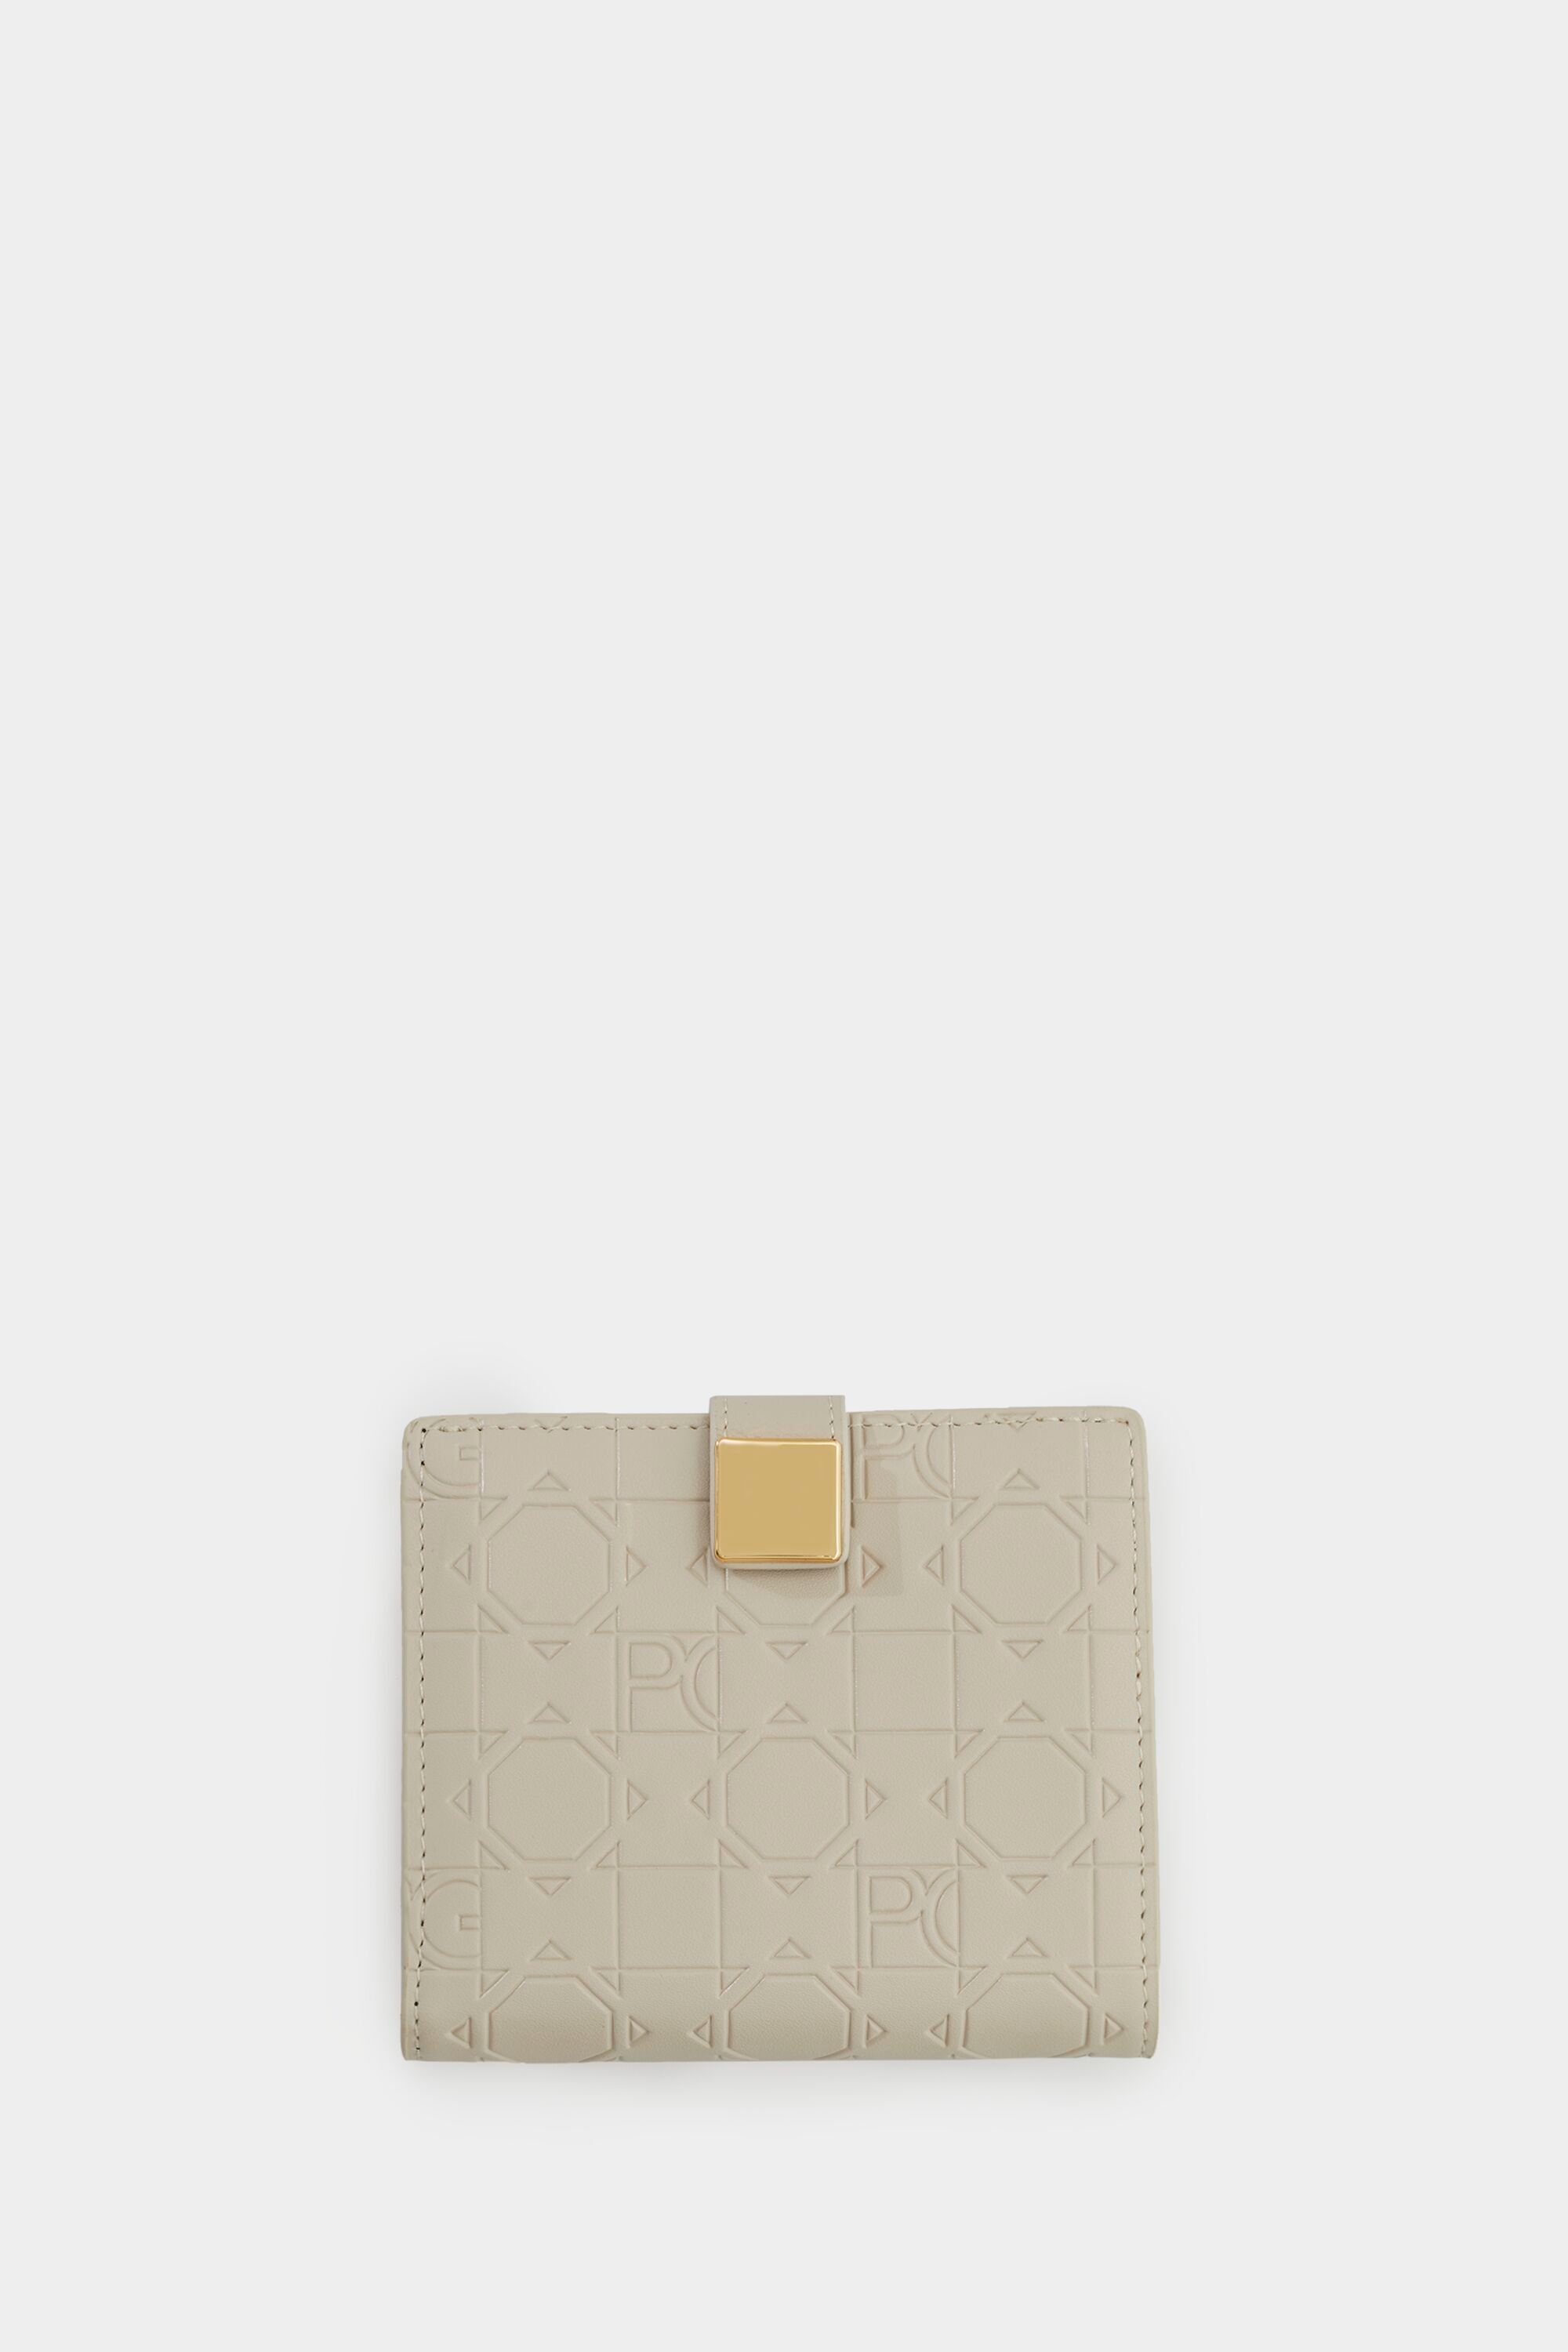 Granada Japanese wallet